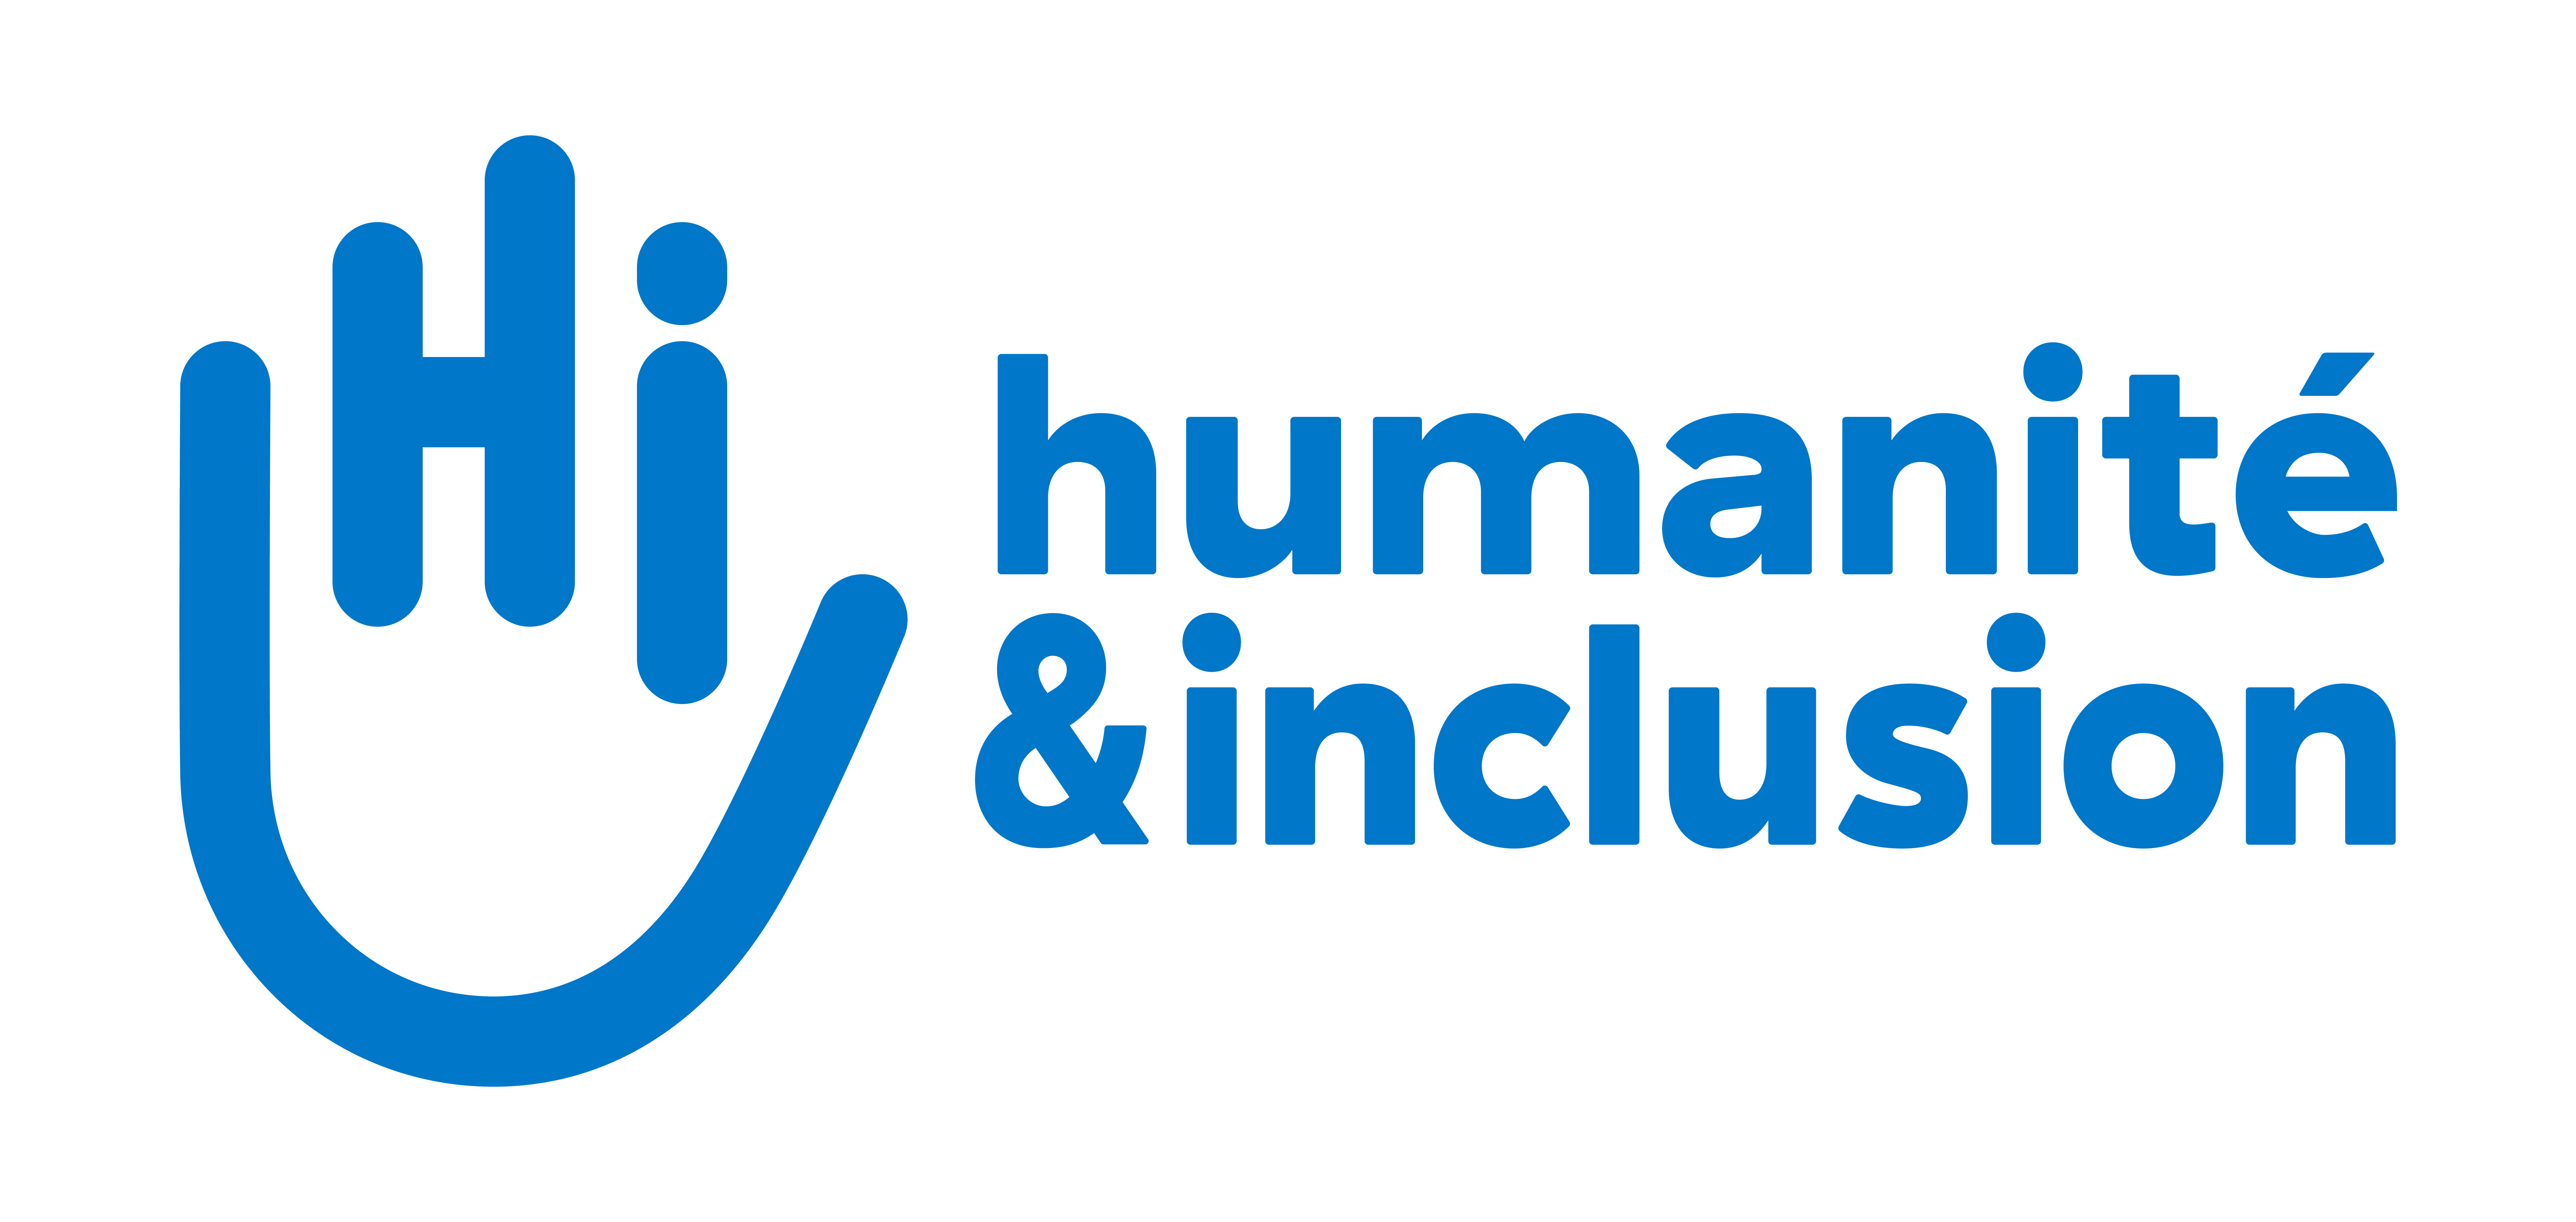 Humanité & Inclusion - Stop Bombing Civilians